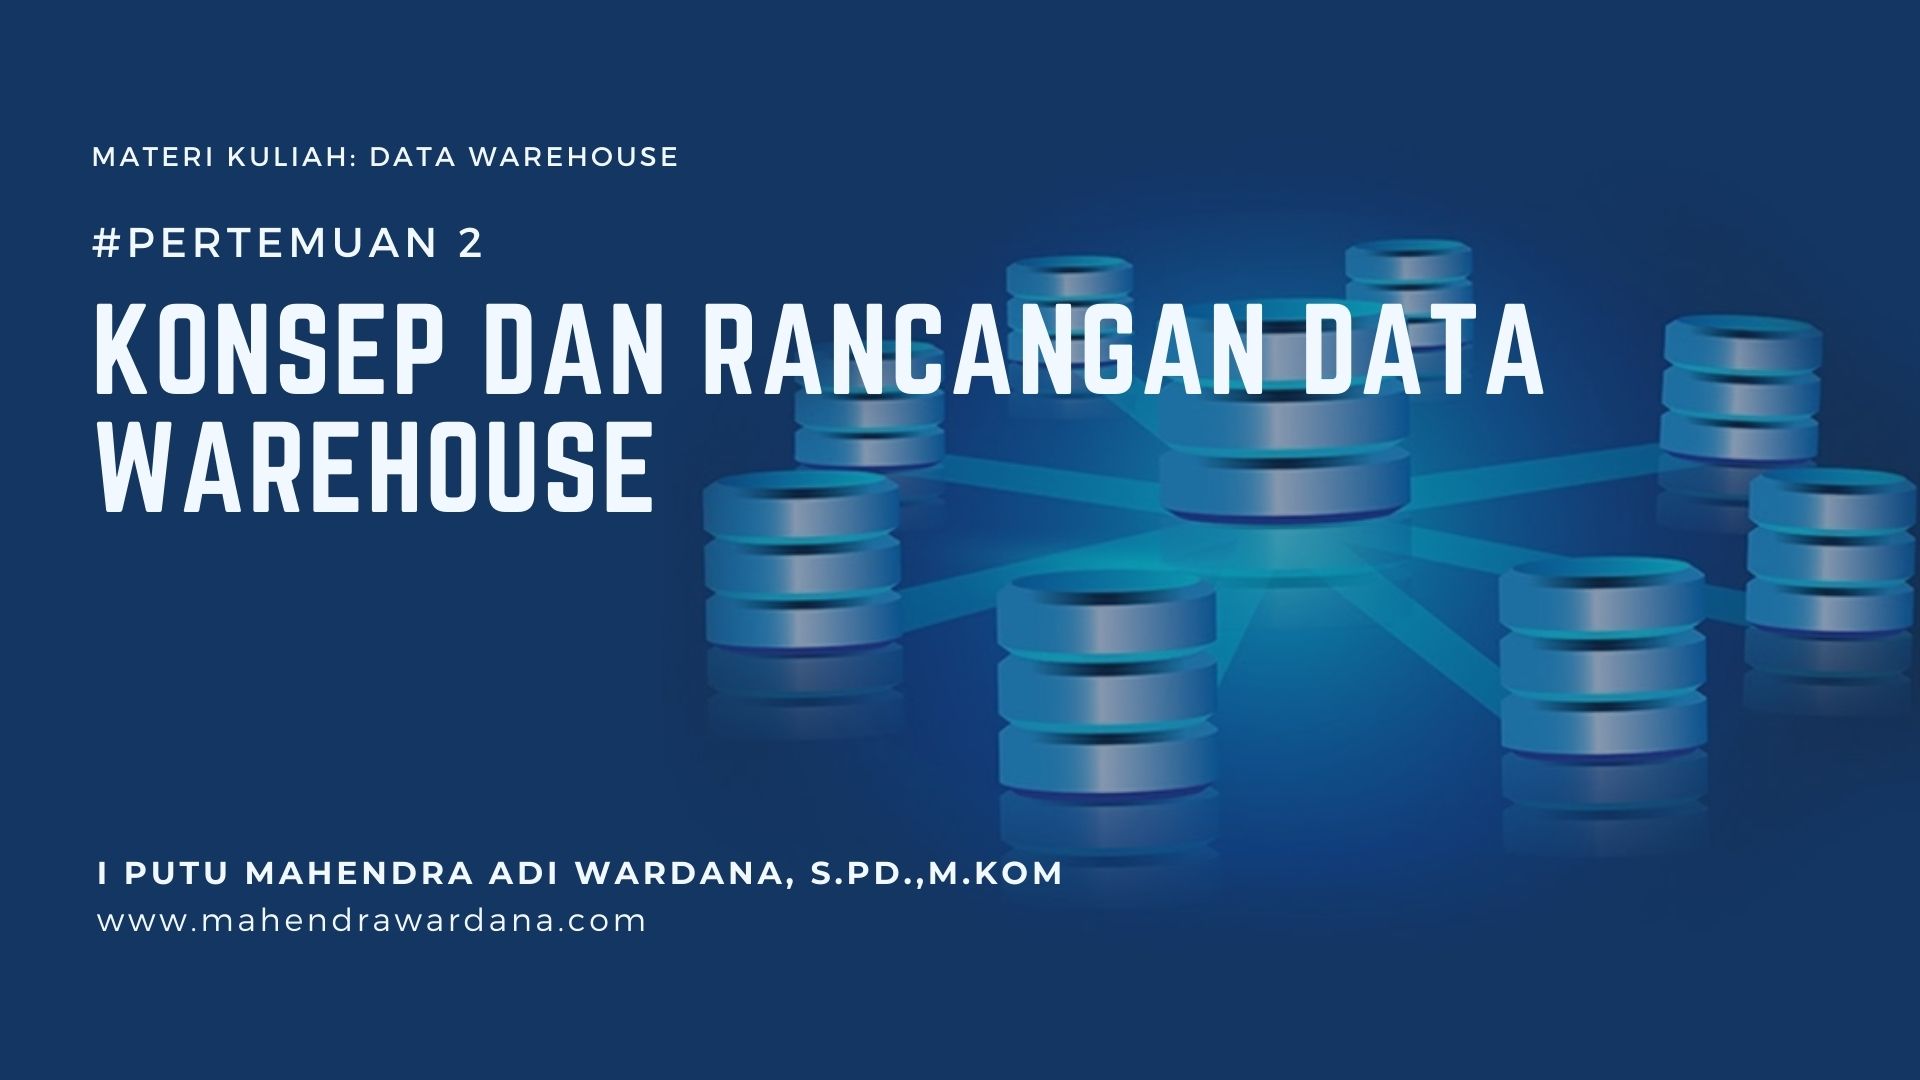 Pertemuan 2 - Konsep dan Rancangan Data Warehouse